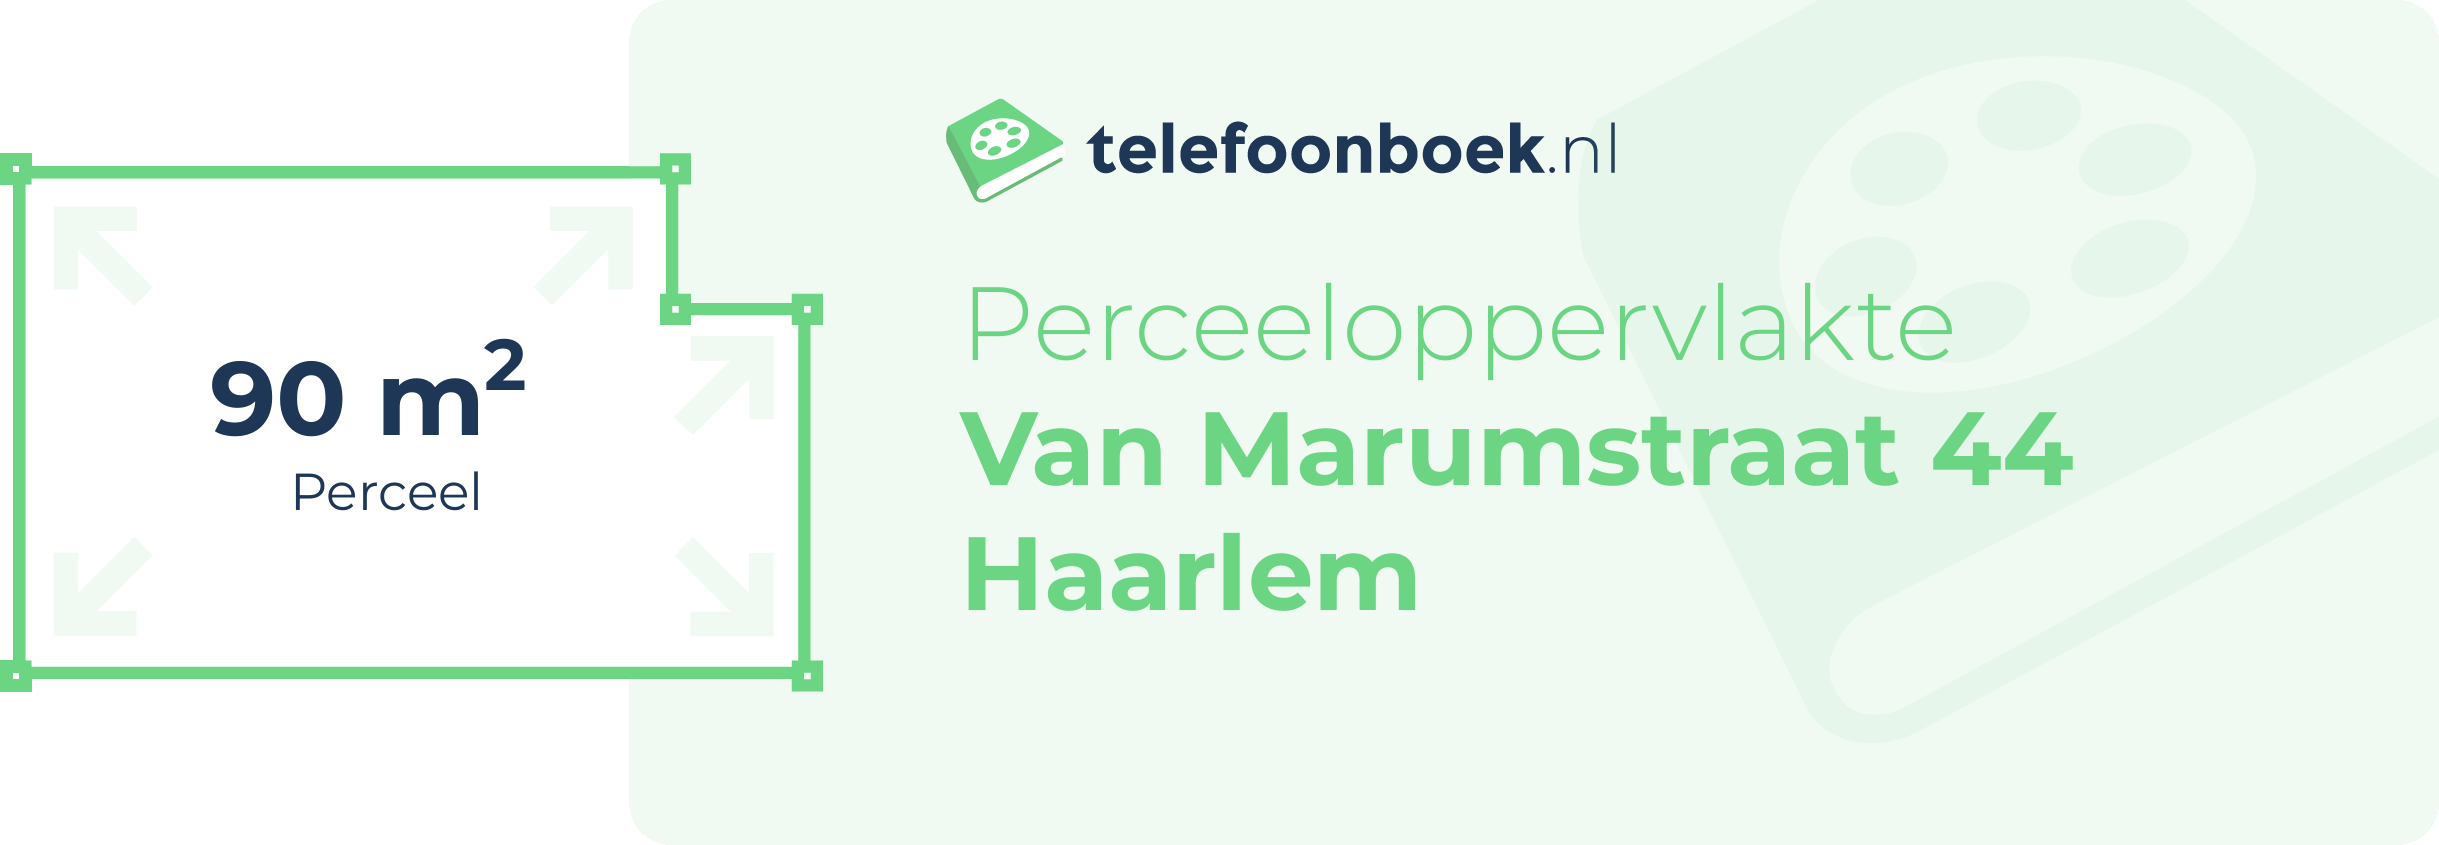 Perceeloppervlakte Van Marumstraat 44 Haarlem